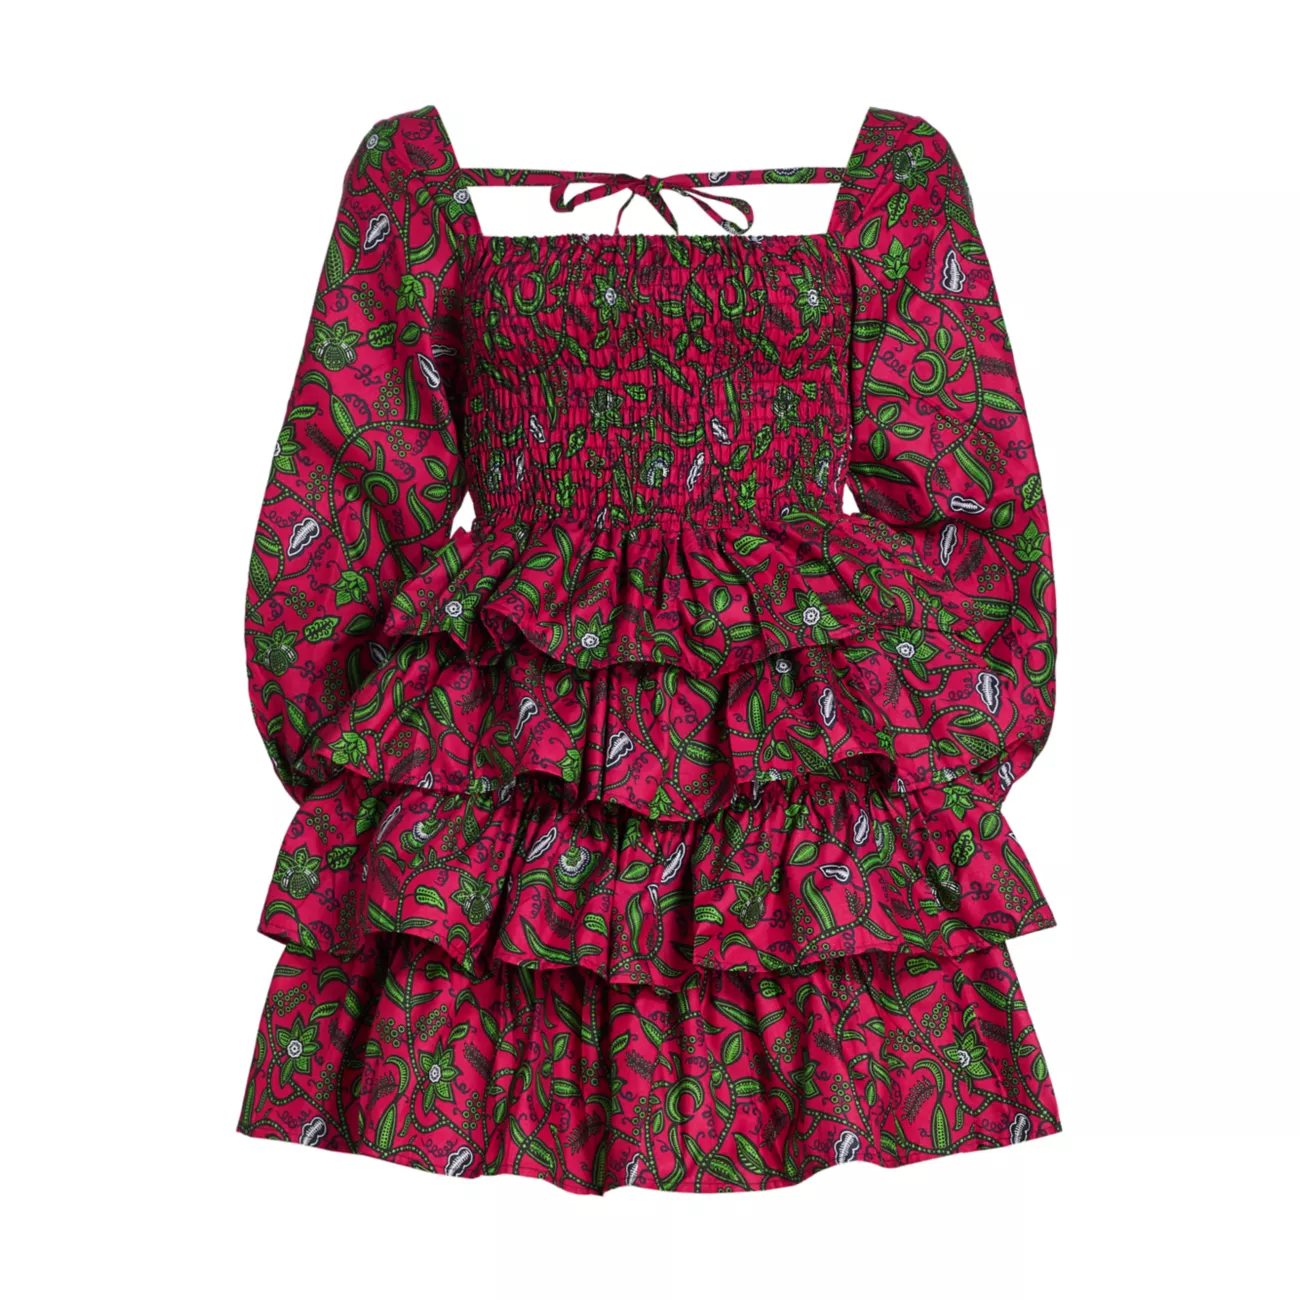 Многоуровневое мини-платье Damola Elisamama